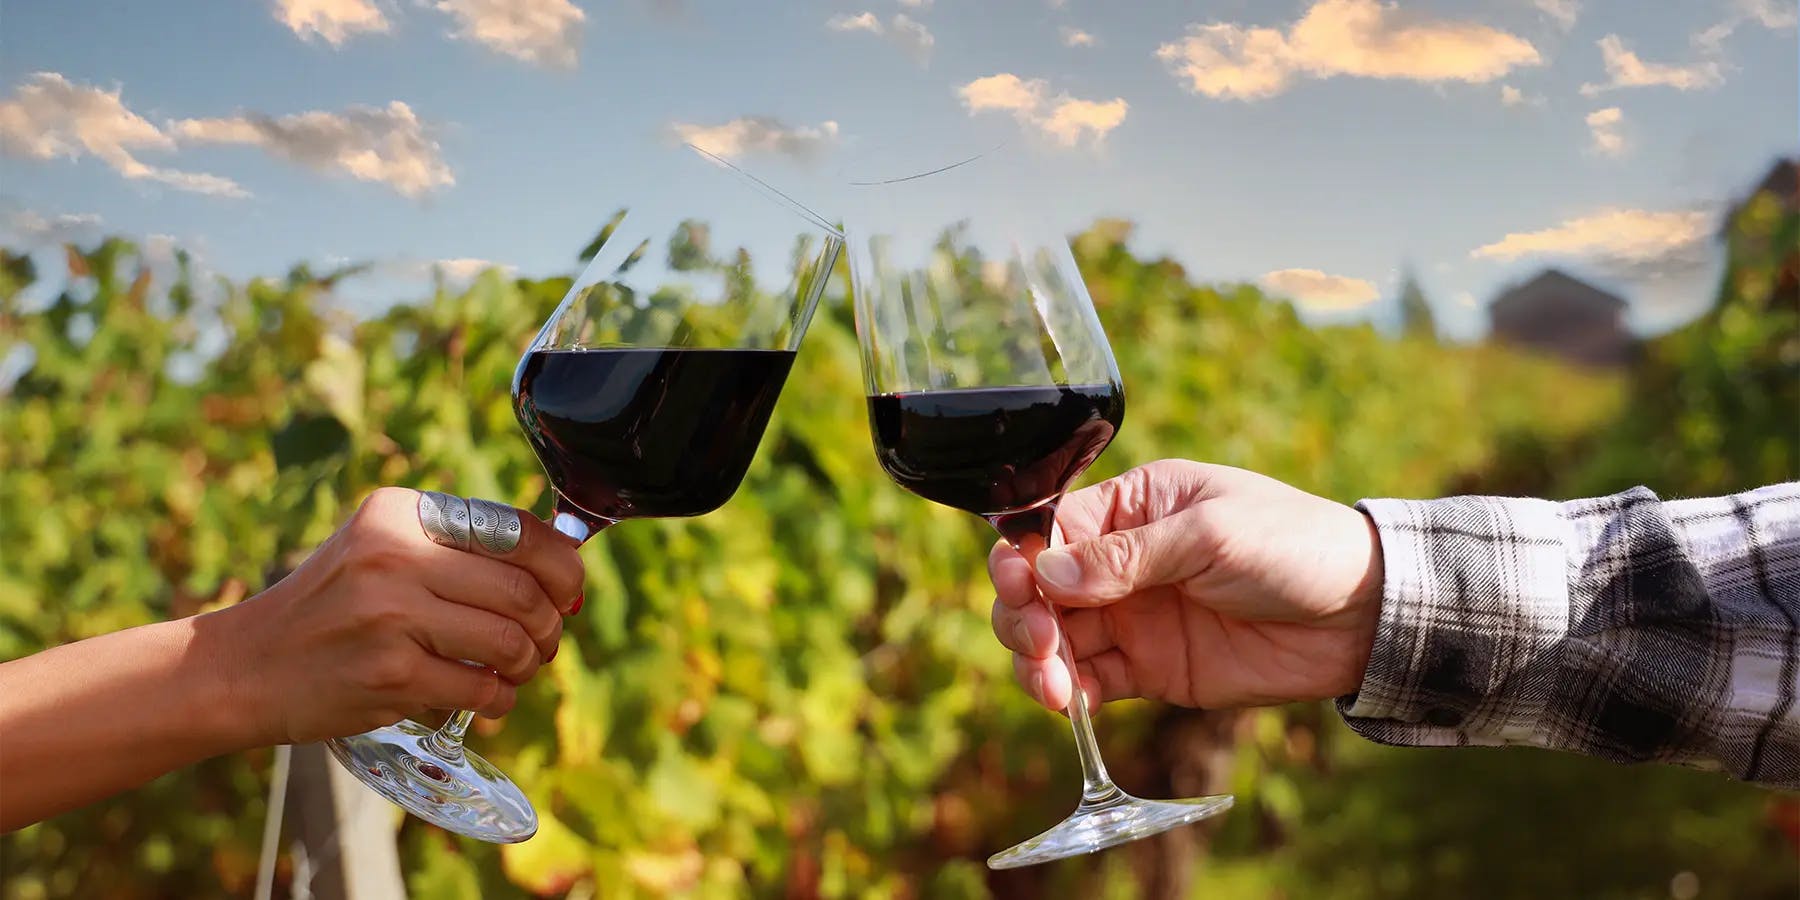 Verre de vin rouge dans les vignes